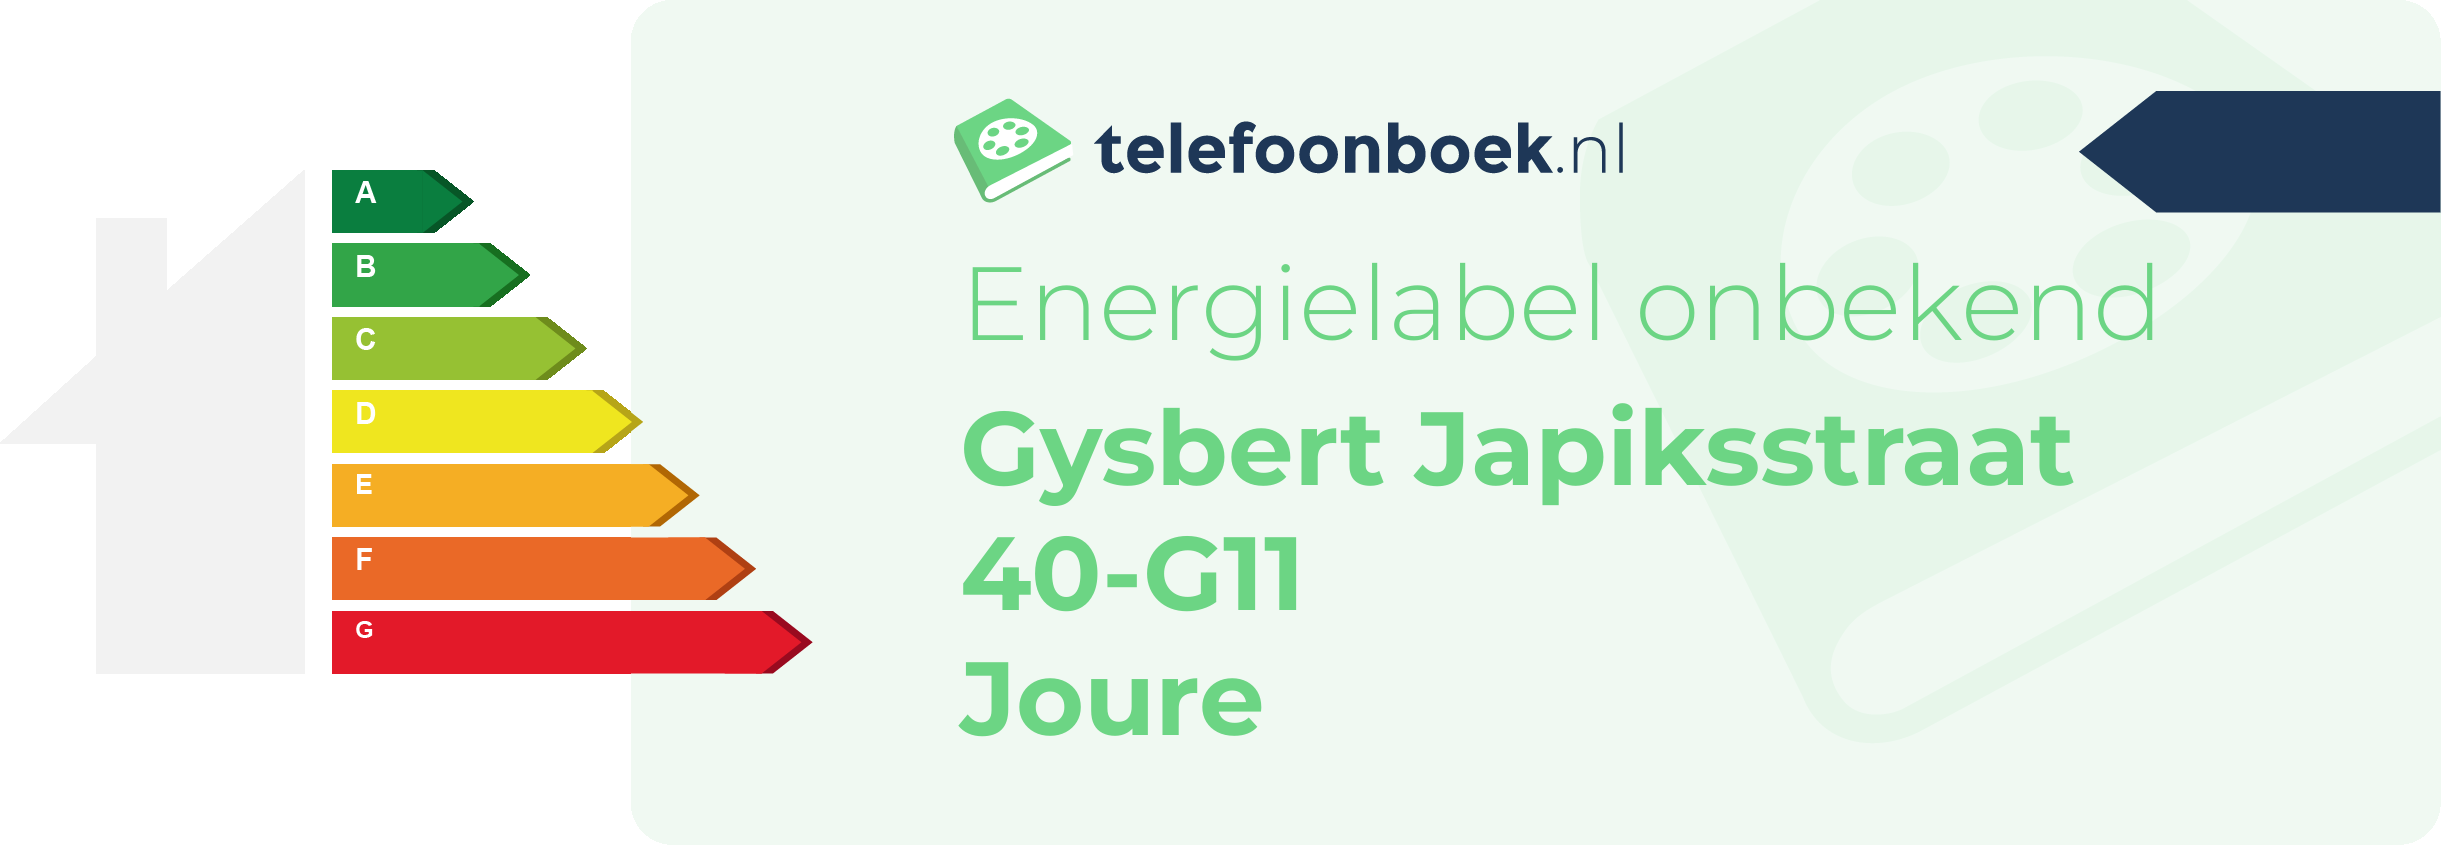 Energielabel Gysbert Japiksstraat 40-G11 Joure